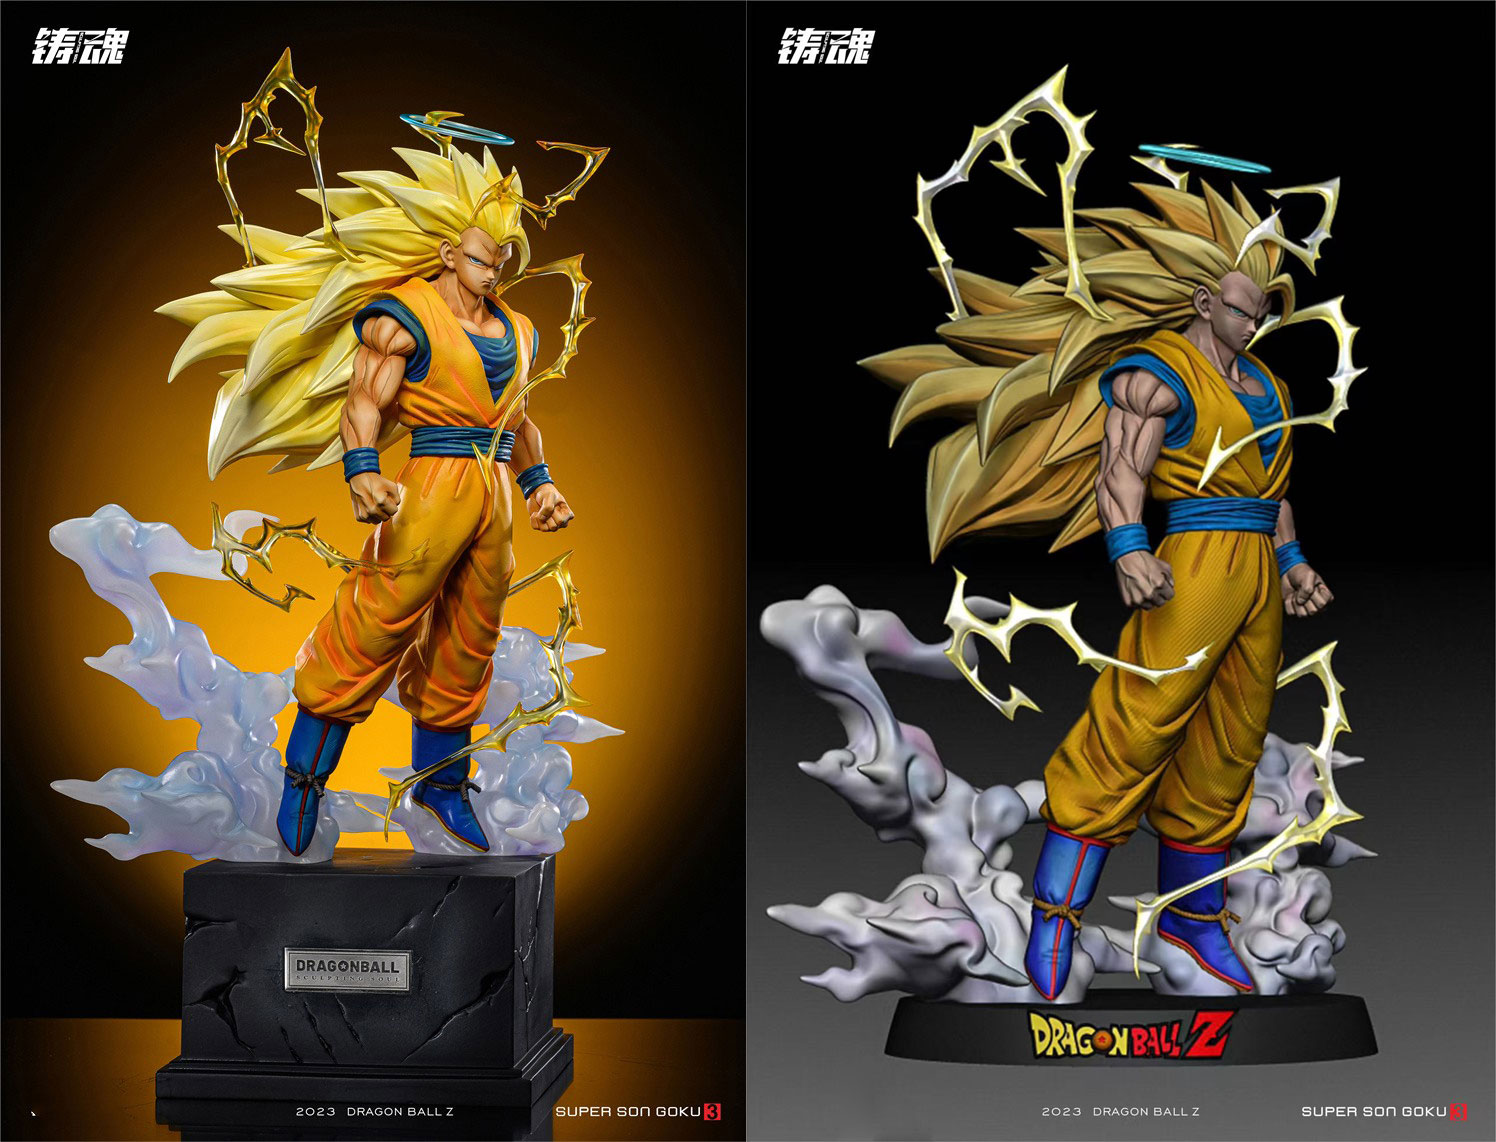 PRE-ORDER HU BEN Studio - Dragon Ball Super Saiyan 3 Son Goku 1/6 Statue(GK)